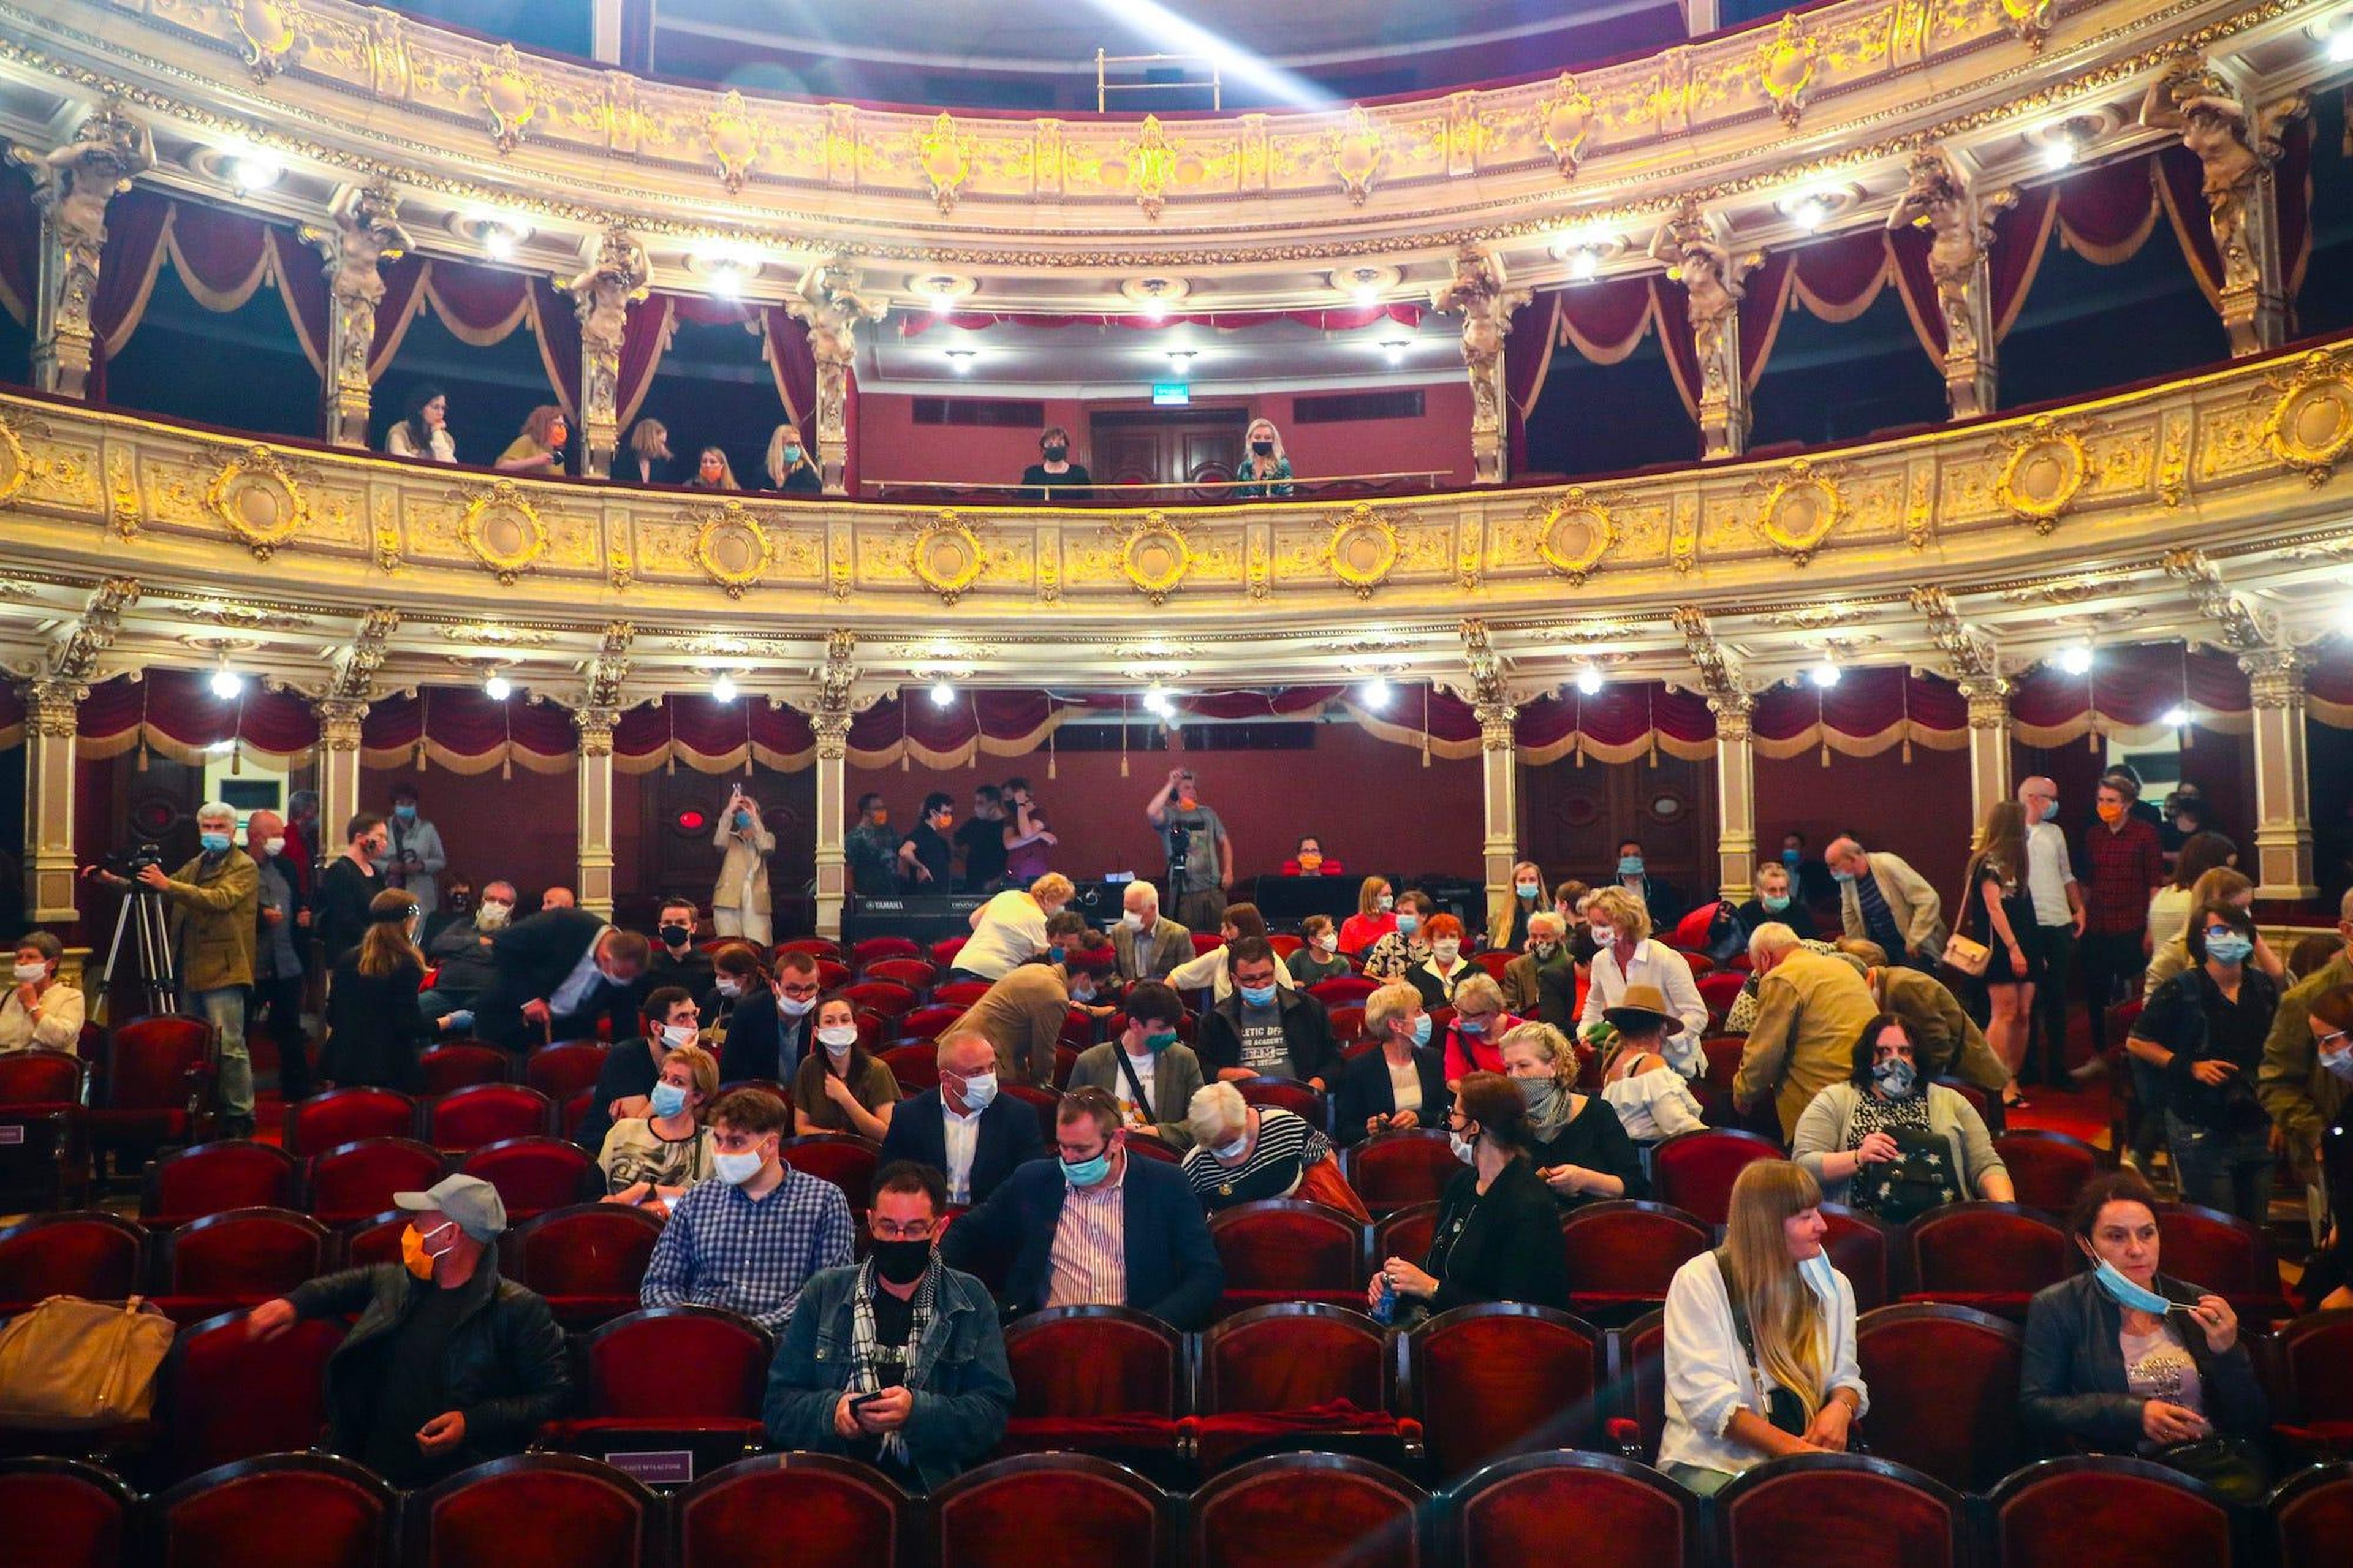 Los espectadores acuden al Teatro Juliusz Slowacki, que celebró su primera actuación después de tres meses de encierro debido a la propagación del coronavirus. Cracovia, Polonia, el 19 de junio de 2020.